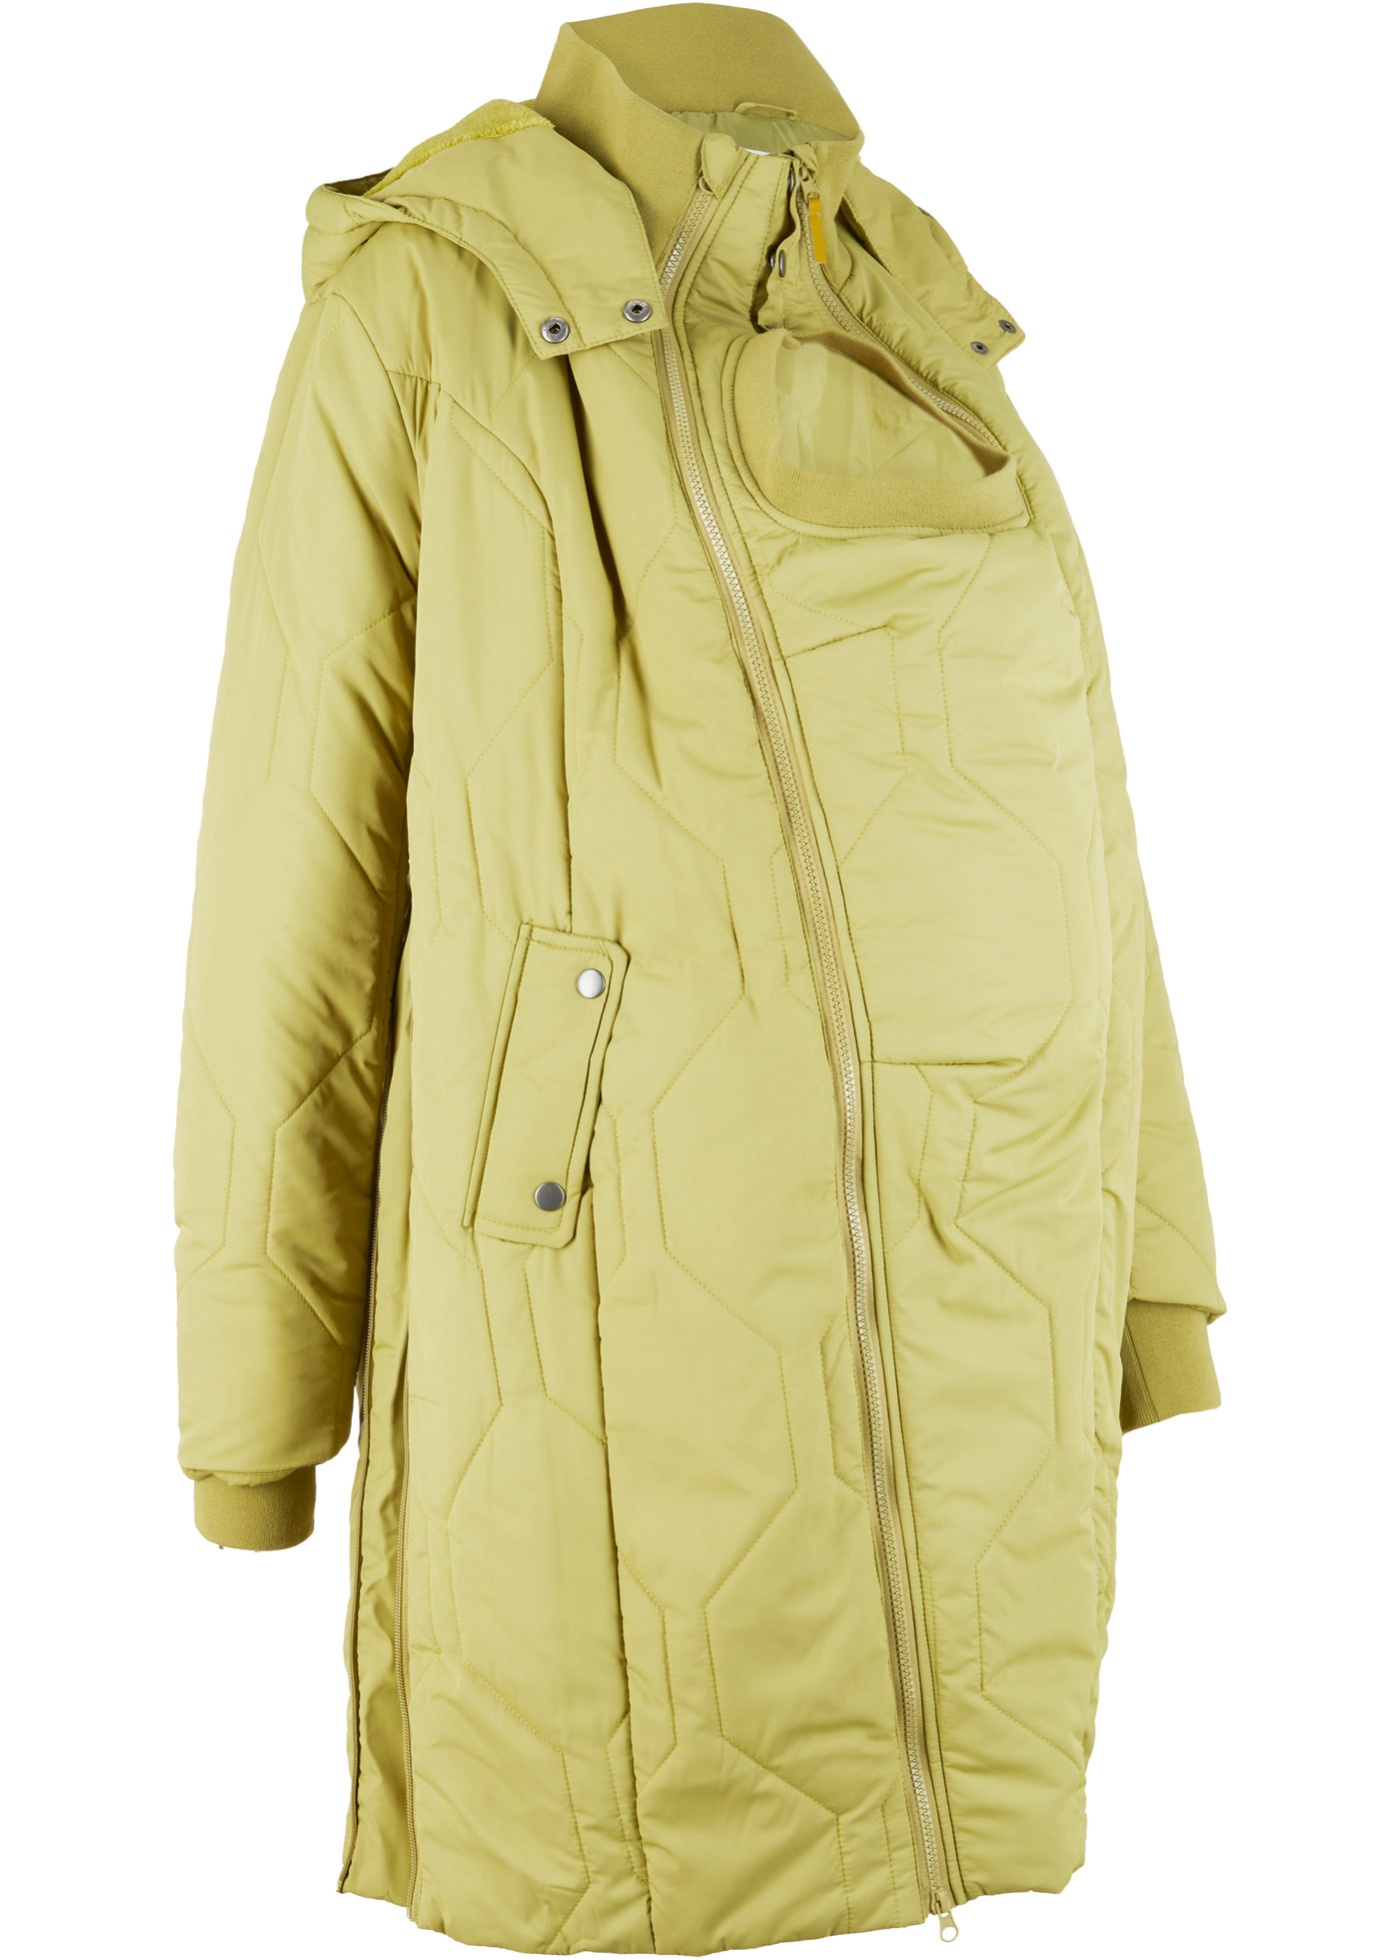 Materský prešívaný kabát kabát na nosenie detí, s recyklovaným polyesterom